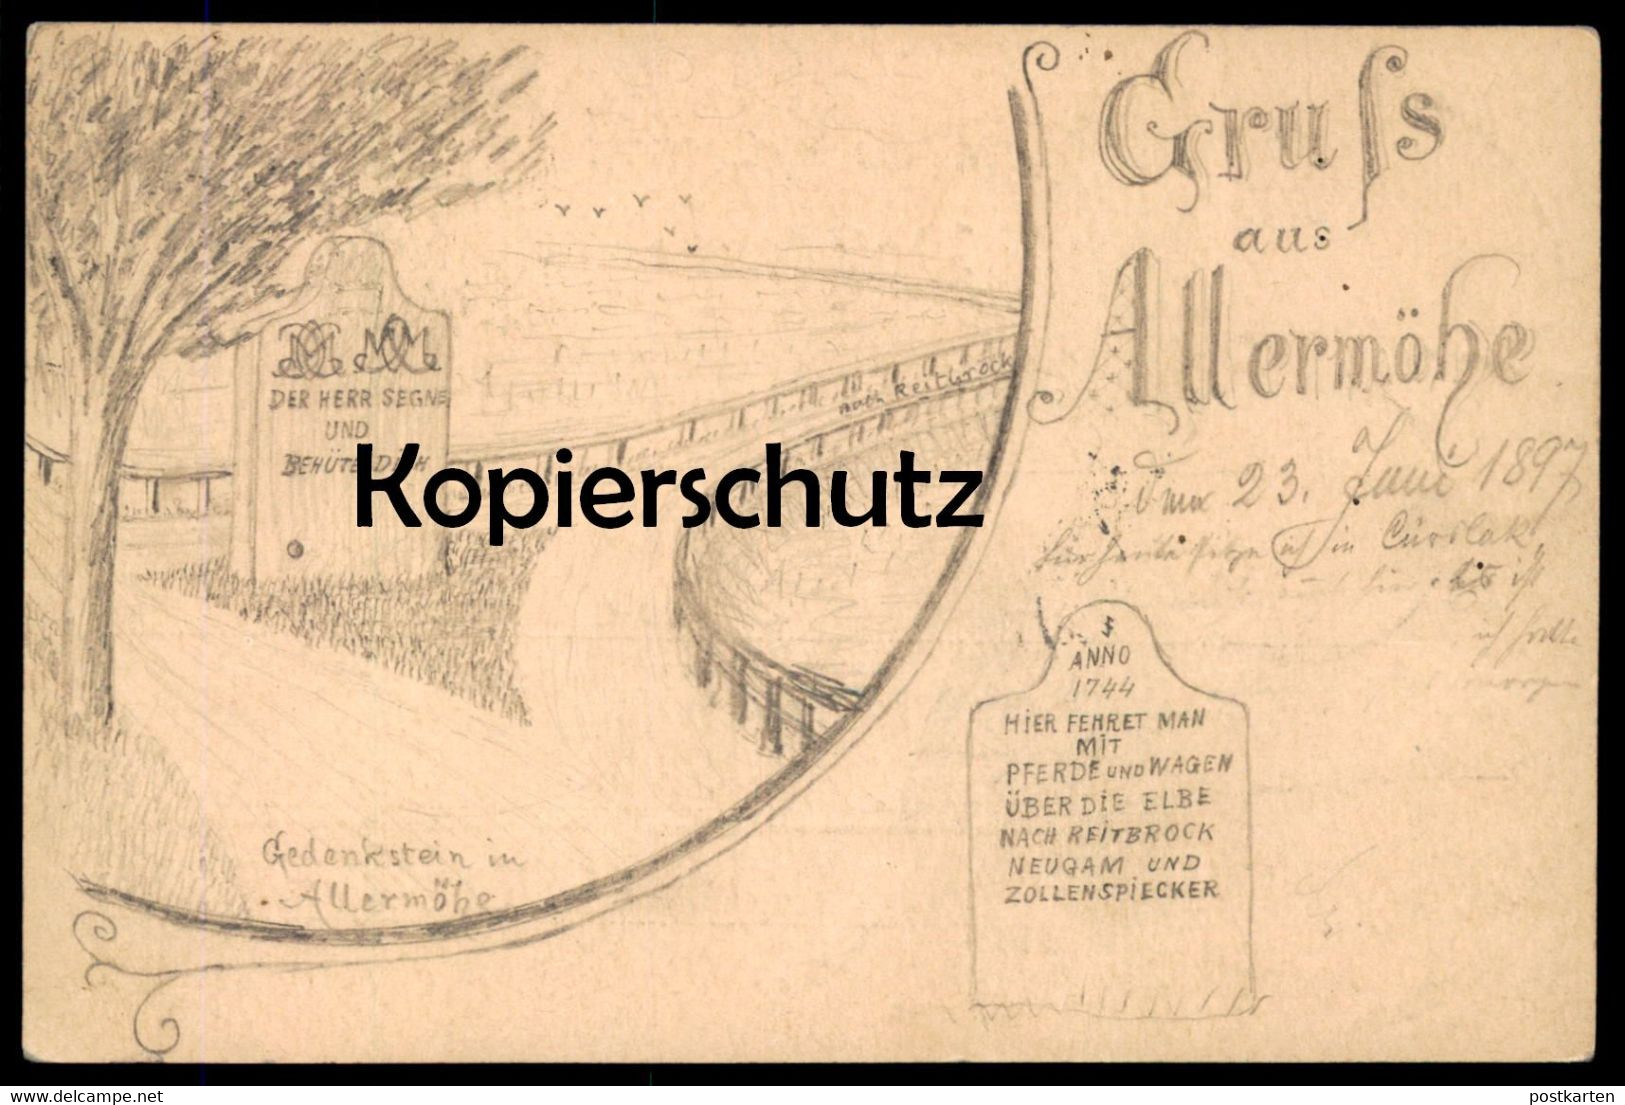 ALTE POSTKARTE ALLERMÖHE HAMBURG HIER FEHRET MAN NACH REITBROOK NEUENGAMME ZOLLENSPIECKER GANZSACHE 1897 Ansichtskarte - Bergedorf